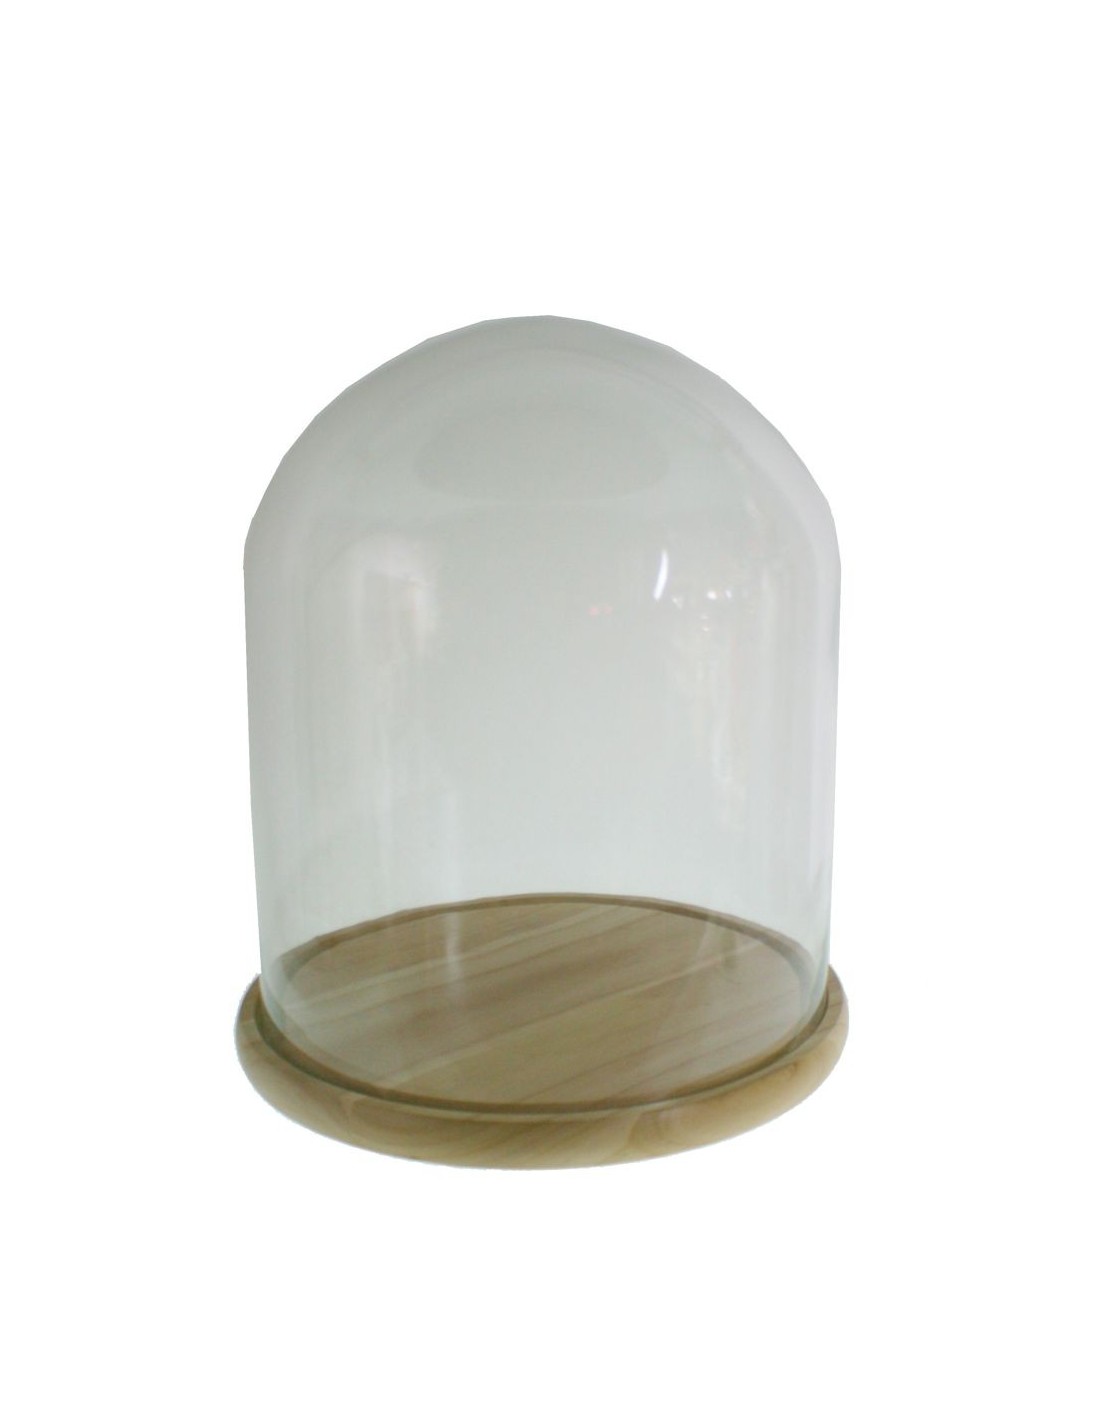 Cúpula campana de cristal ancha con base de madera para exposición de objeto decorativos